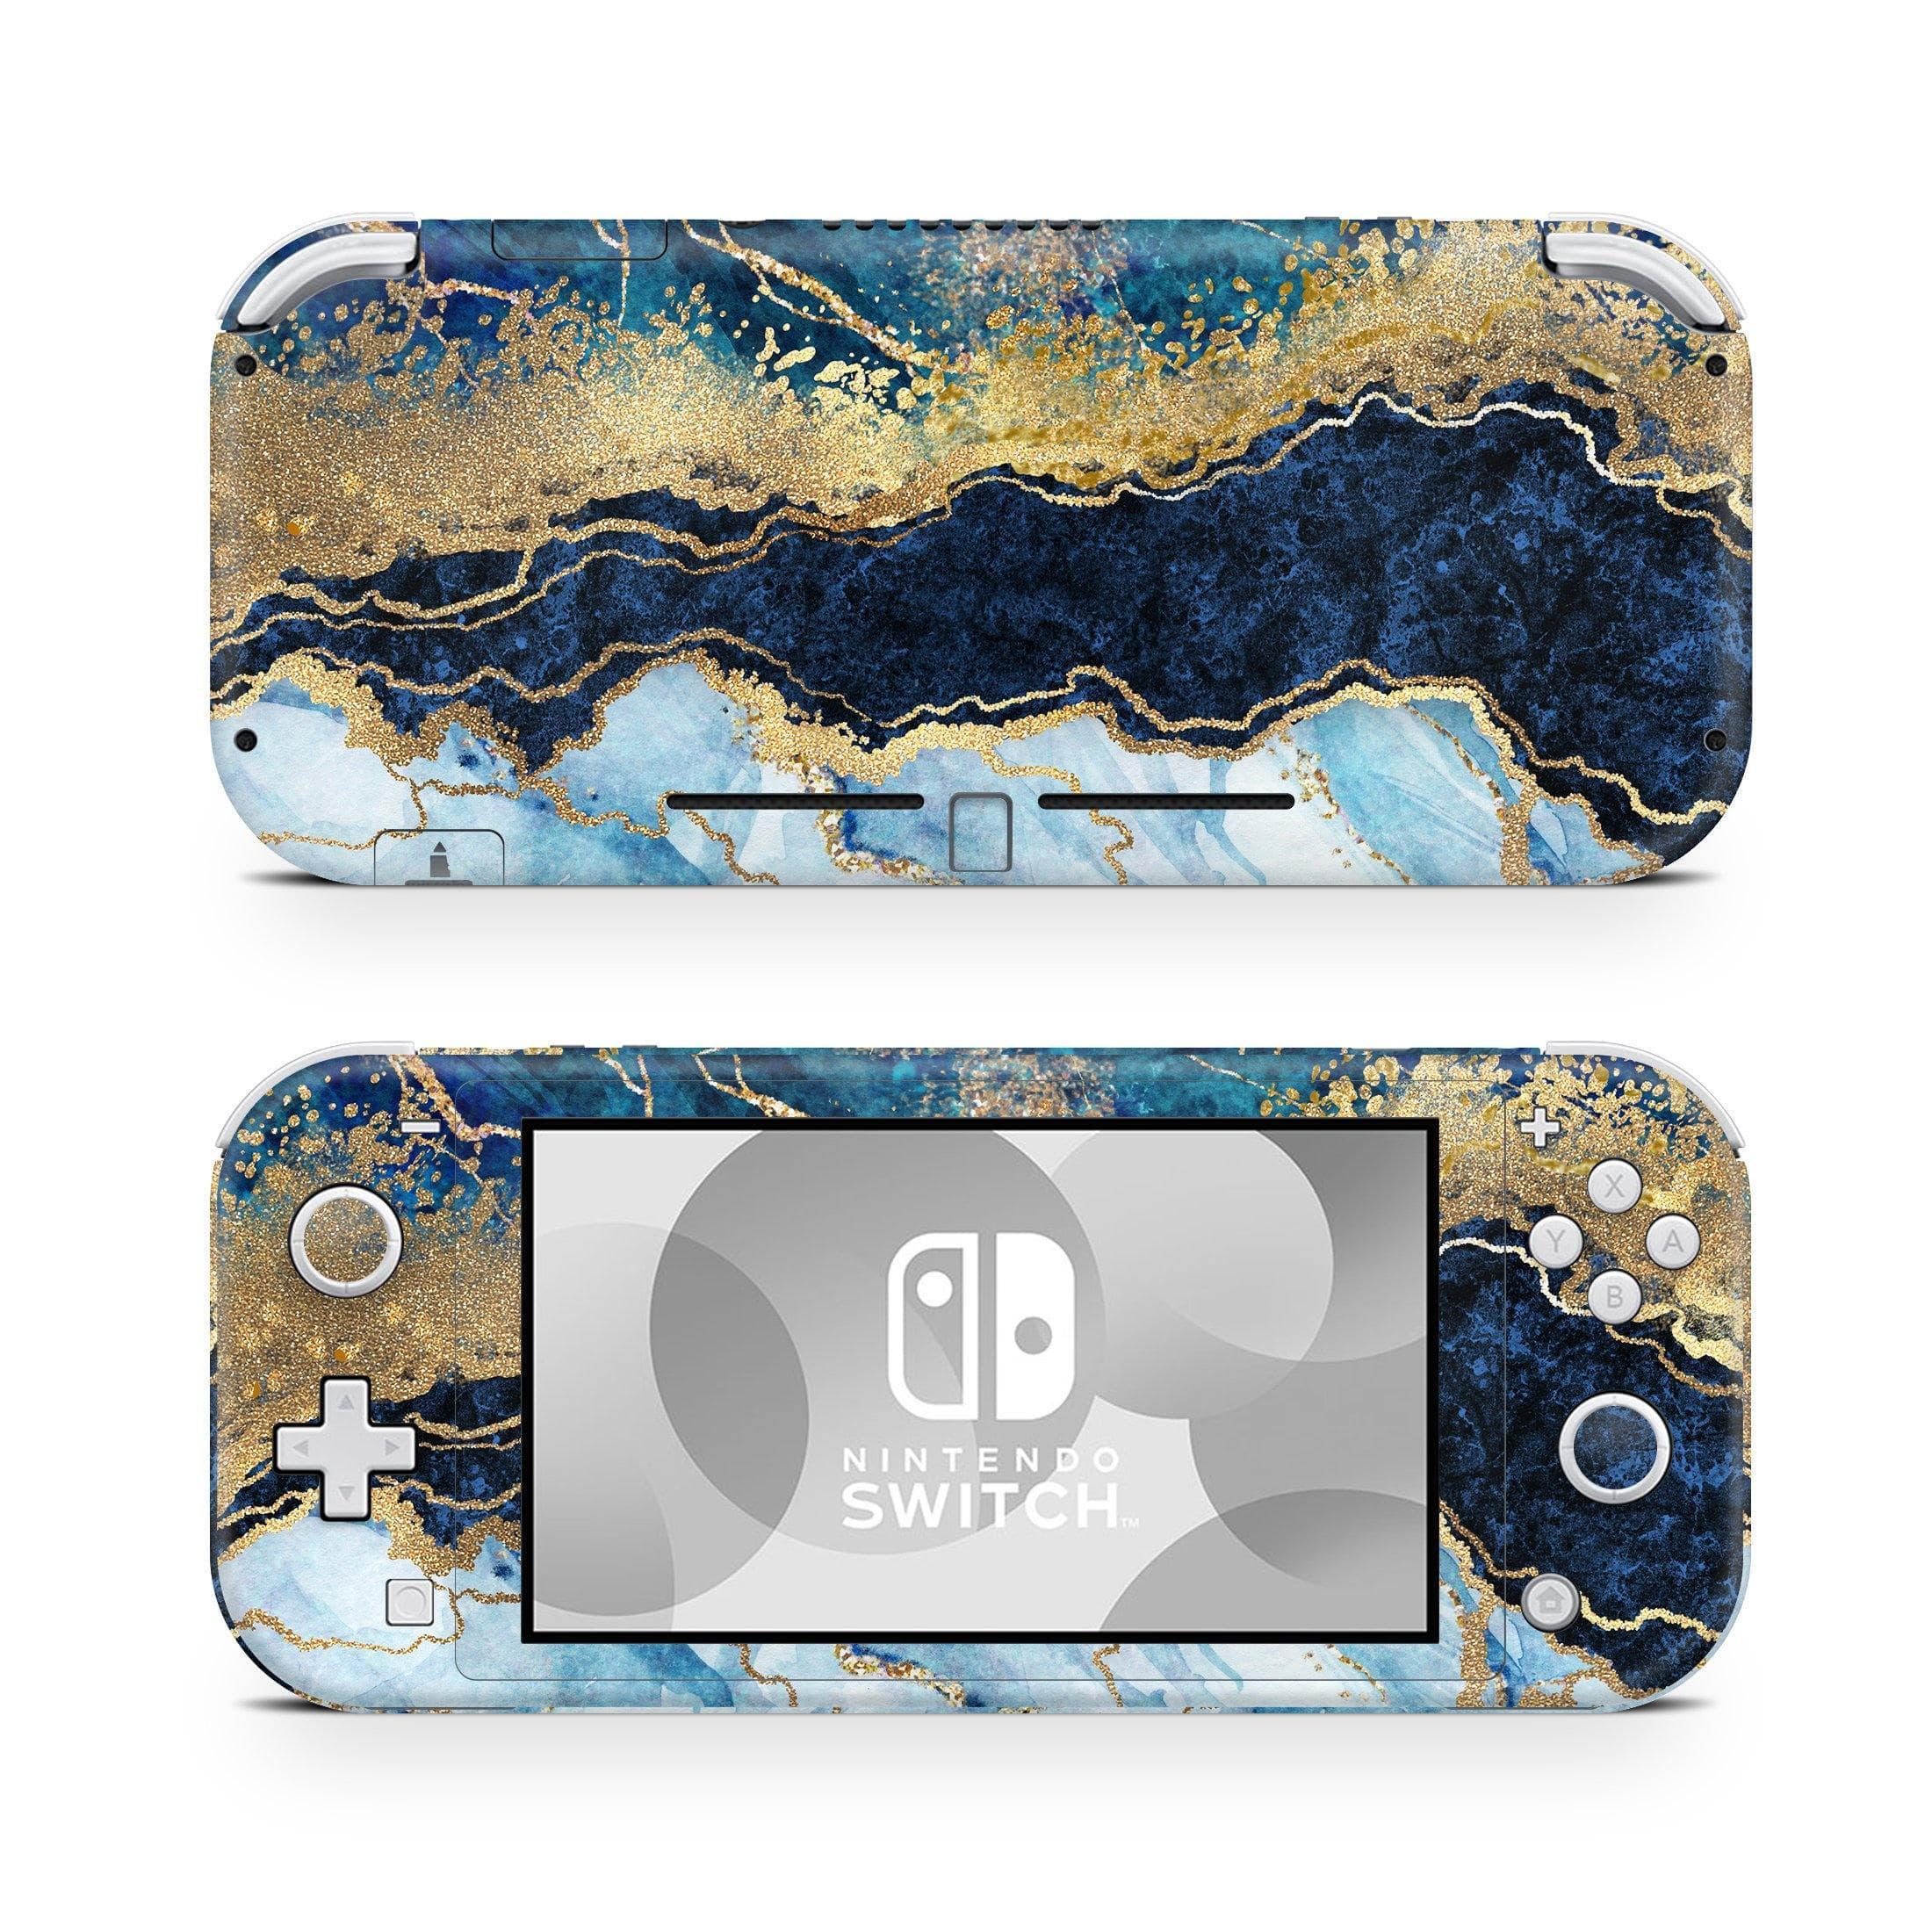 Nintendo Switch Lite Skin Decals - Gold Navy - Wrap Vinyl Sticker